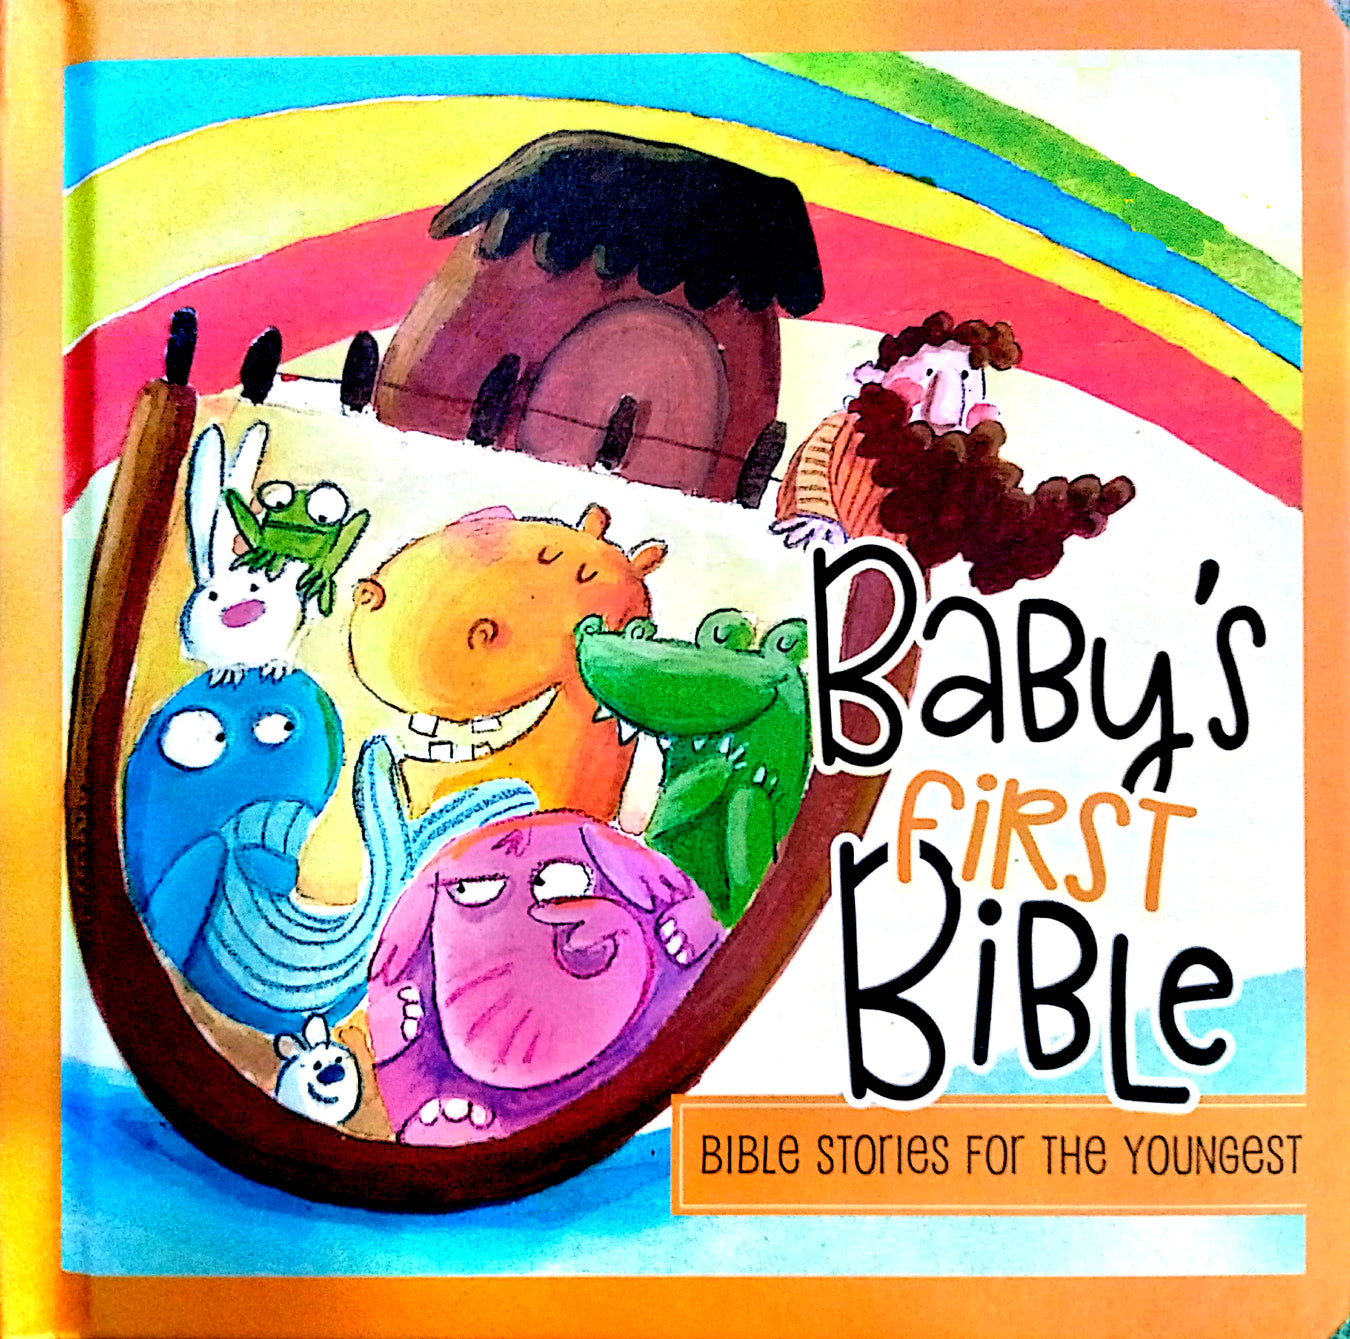 Books for Christian children